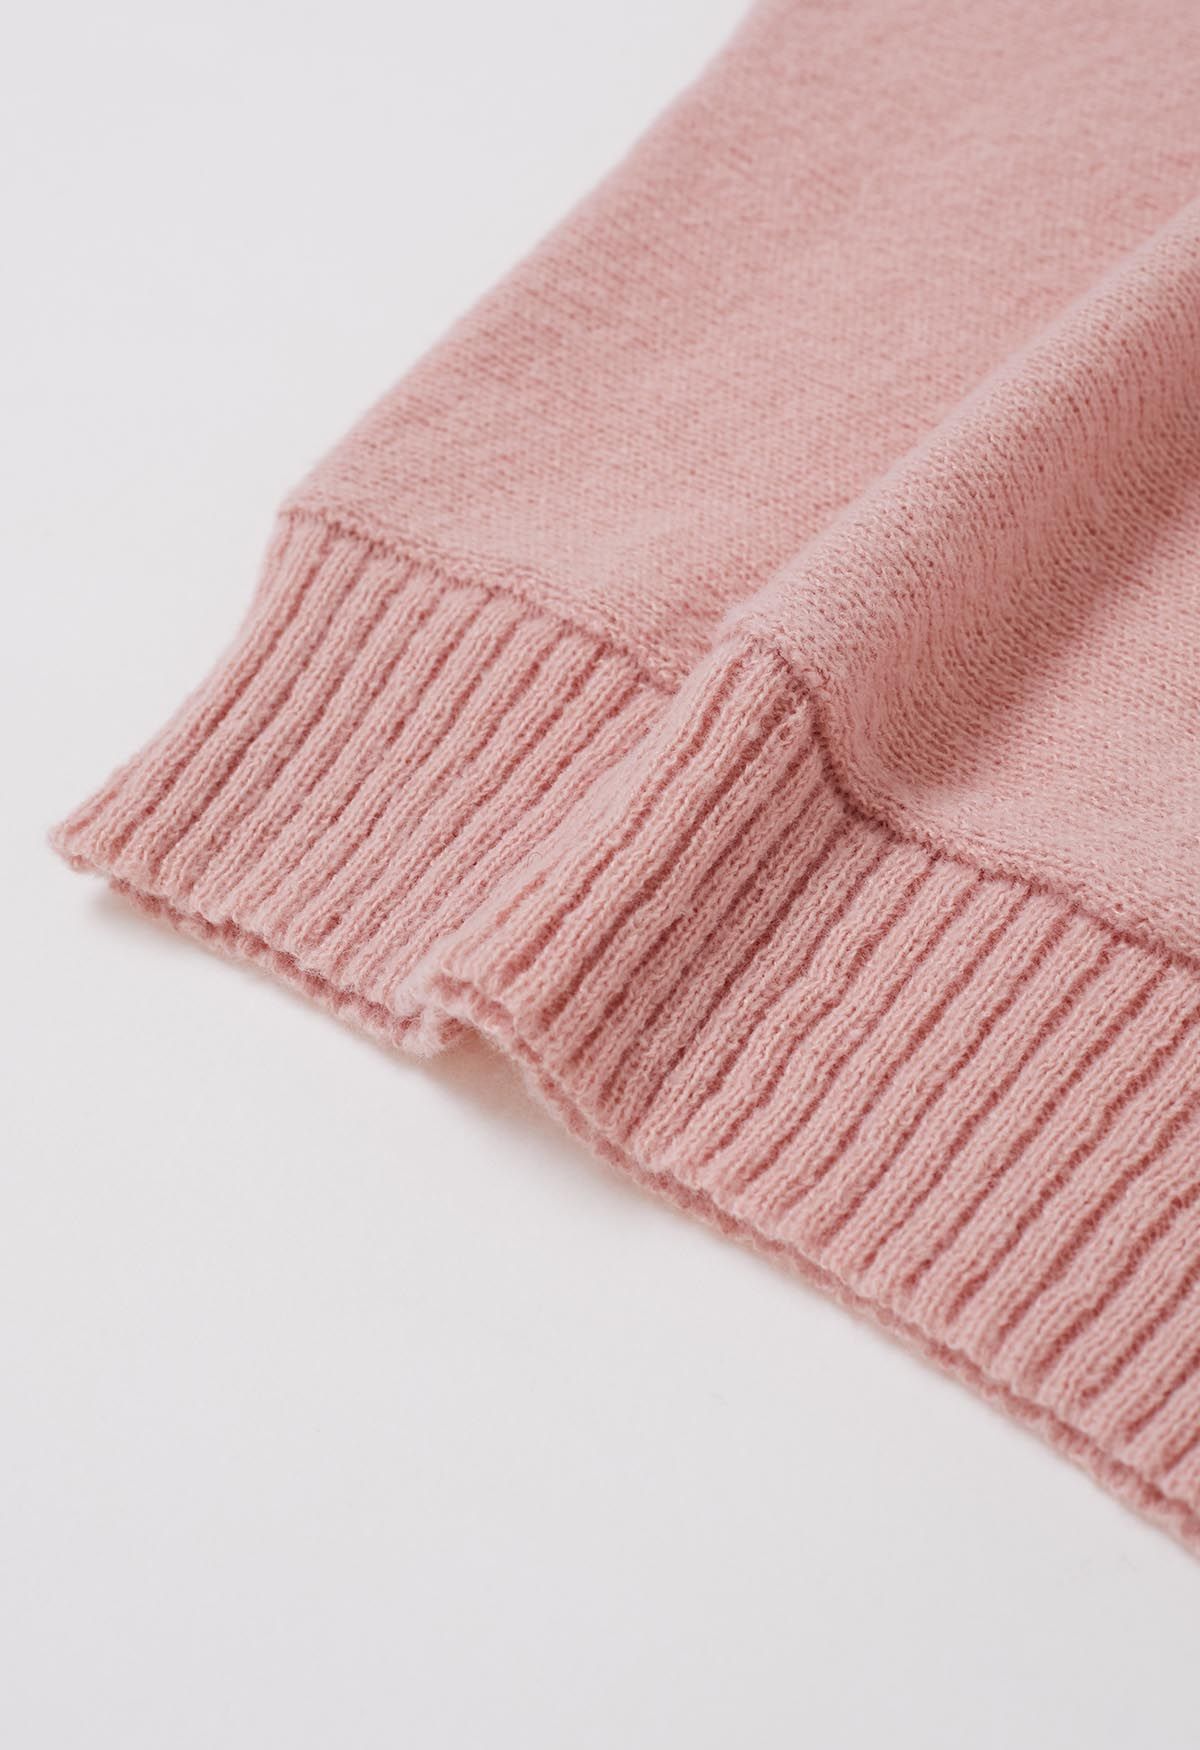 Merry - Pull en tricot à col roulé et manches chauve-souris en rose